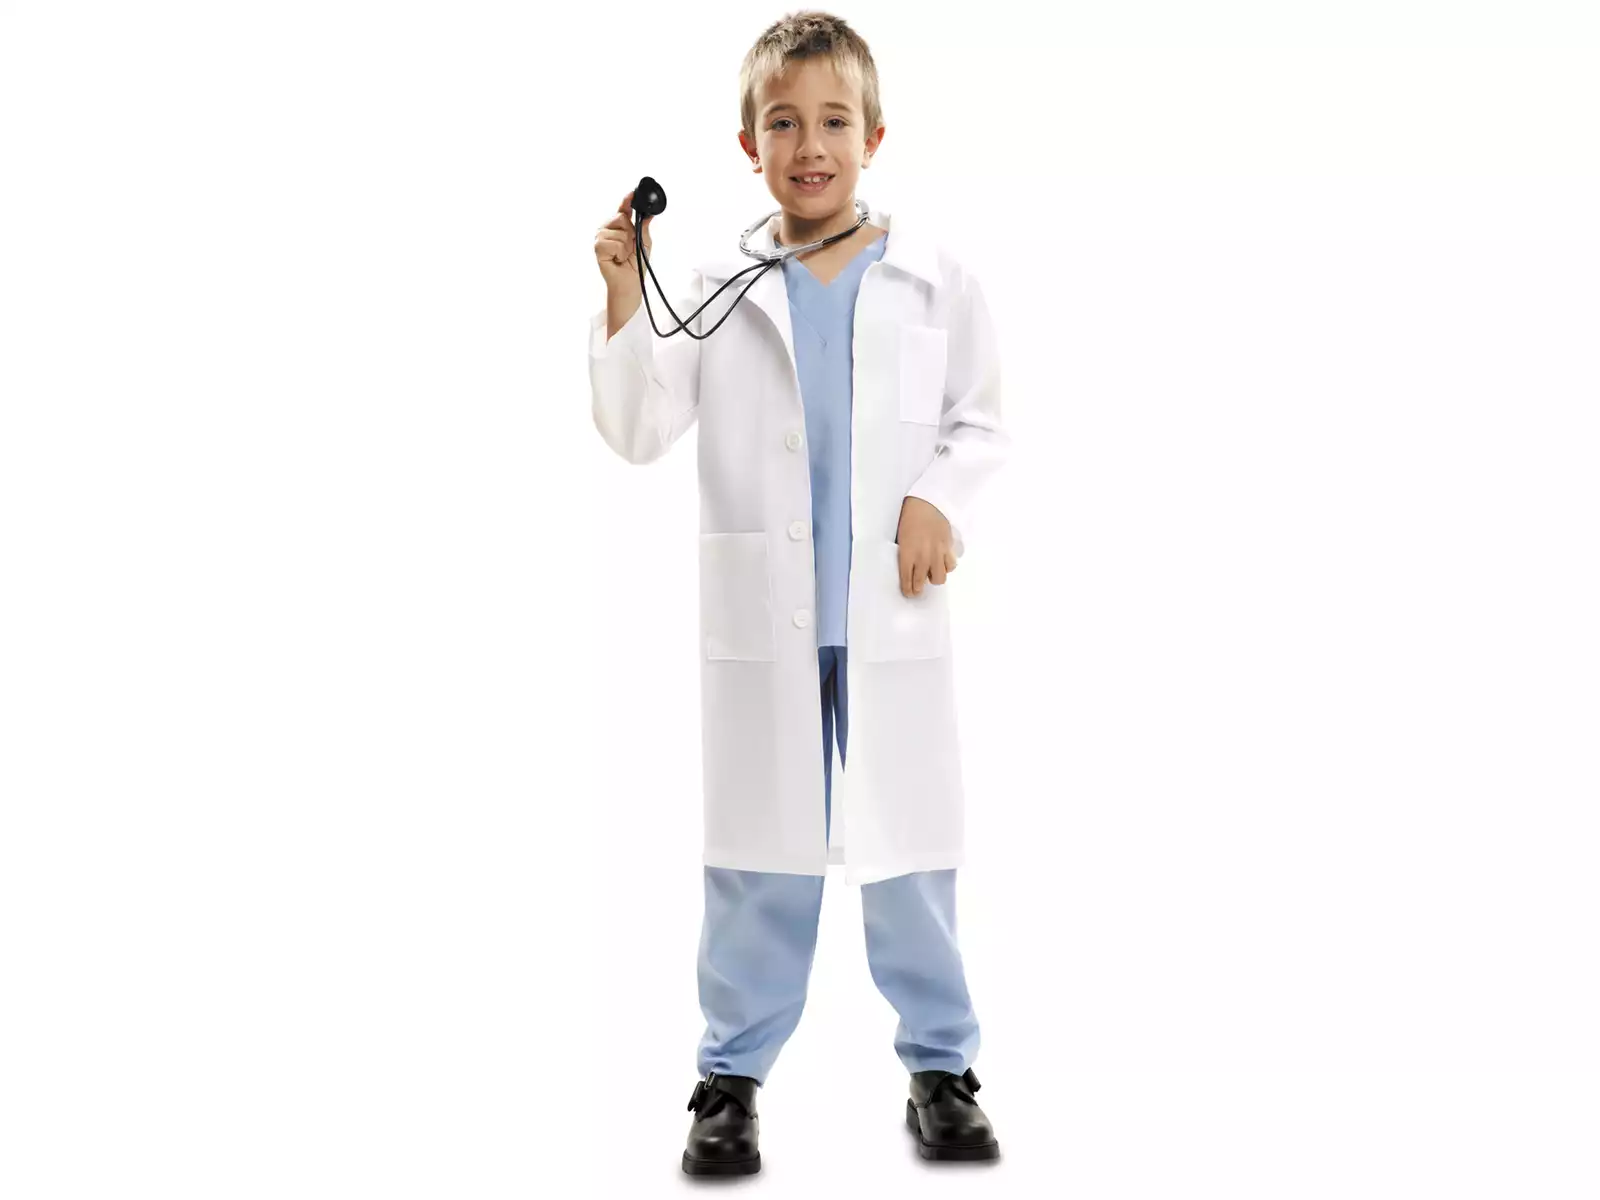 Blouse Docteur Enfants Jeu d'Imitation Jouet Deguisement Docteur Costume  Blouse Blanche Enfant Fille Garcon 3 4 5 Ans